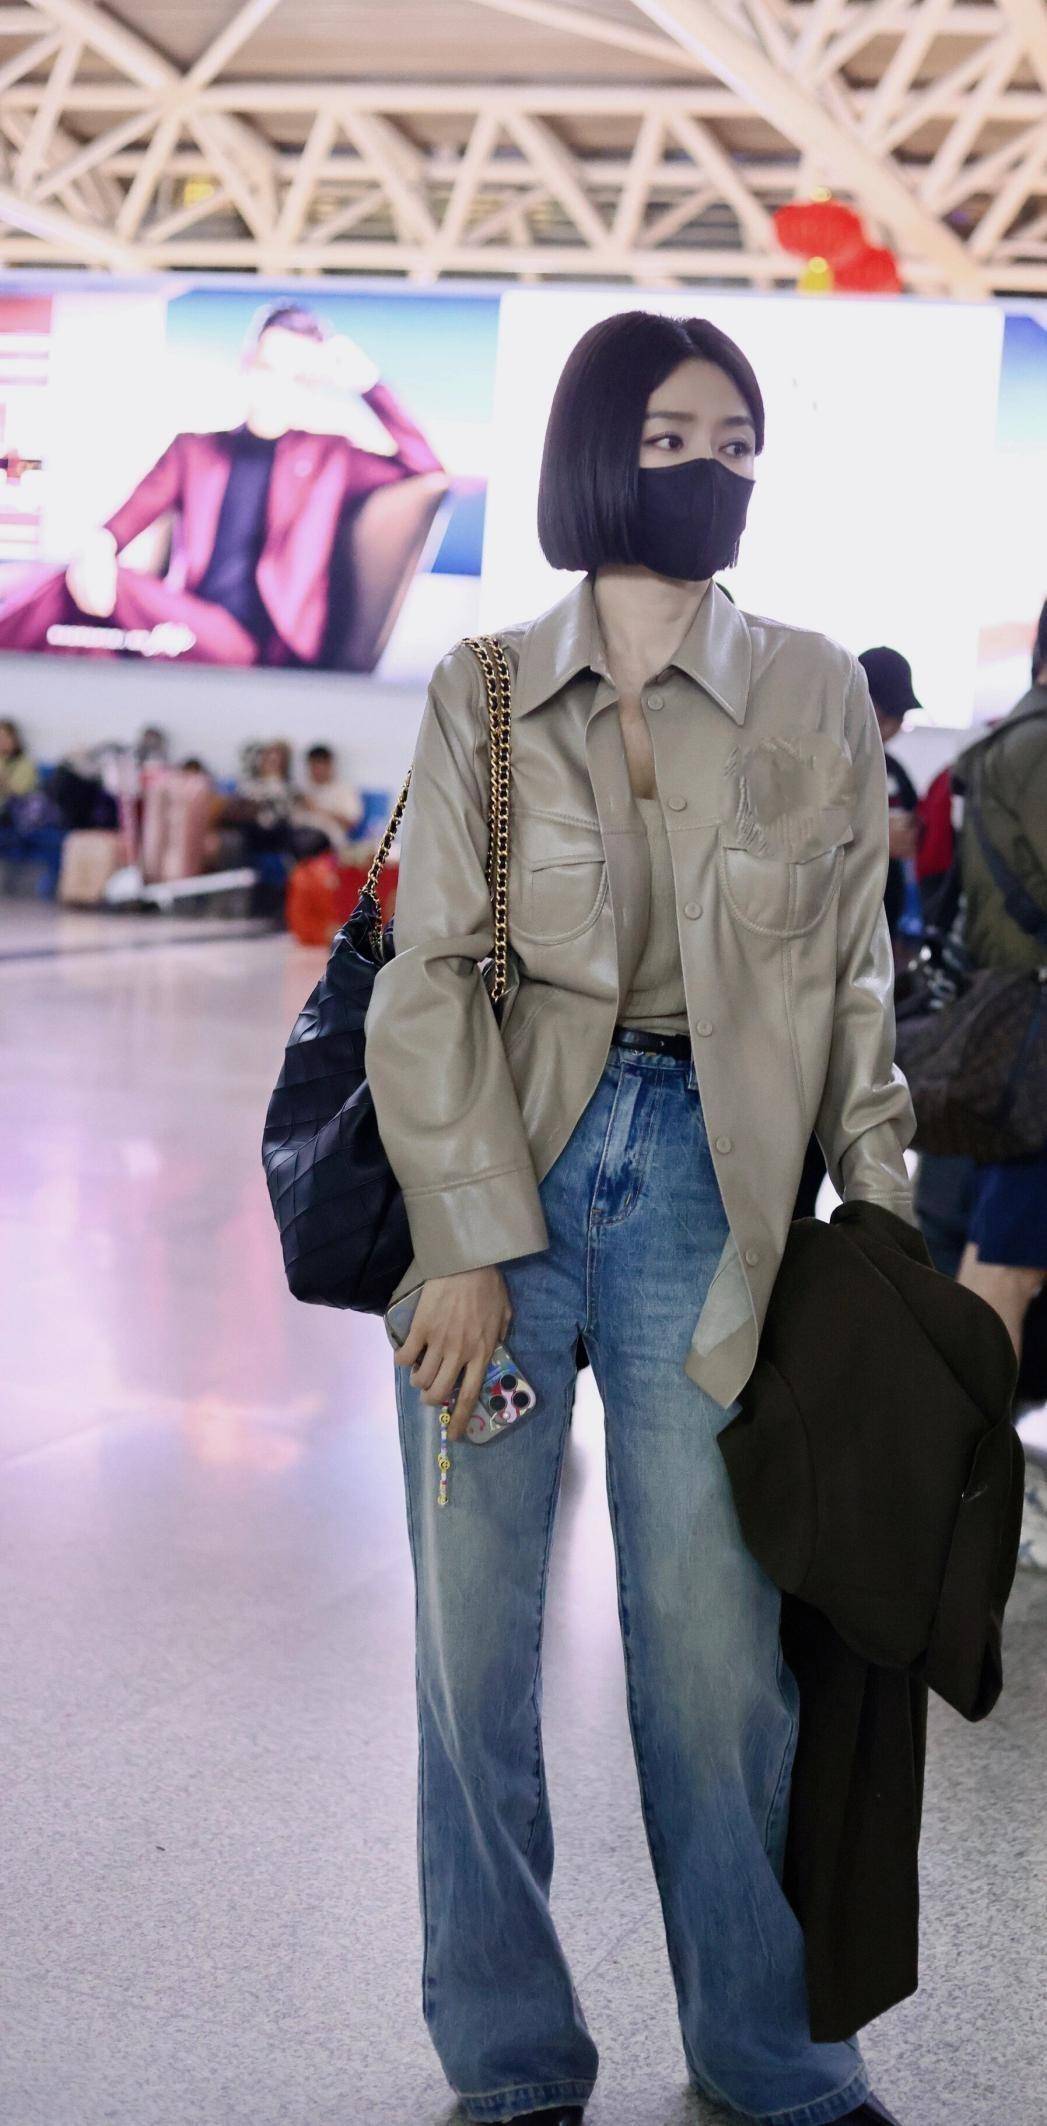 44岁秦岚带火了一种新穿搭:皮衣衬衫 牛仔裤 波波头,洋气又时尚